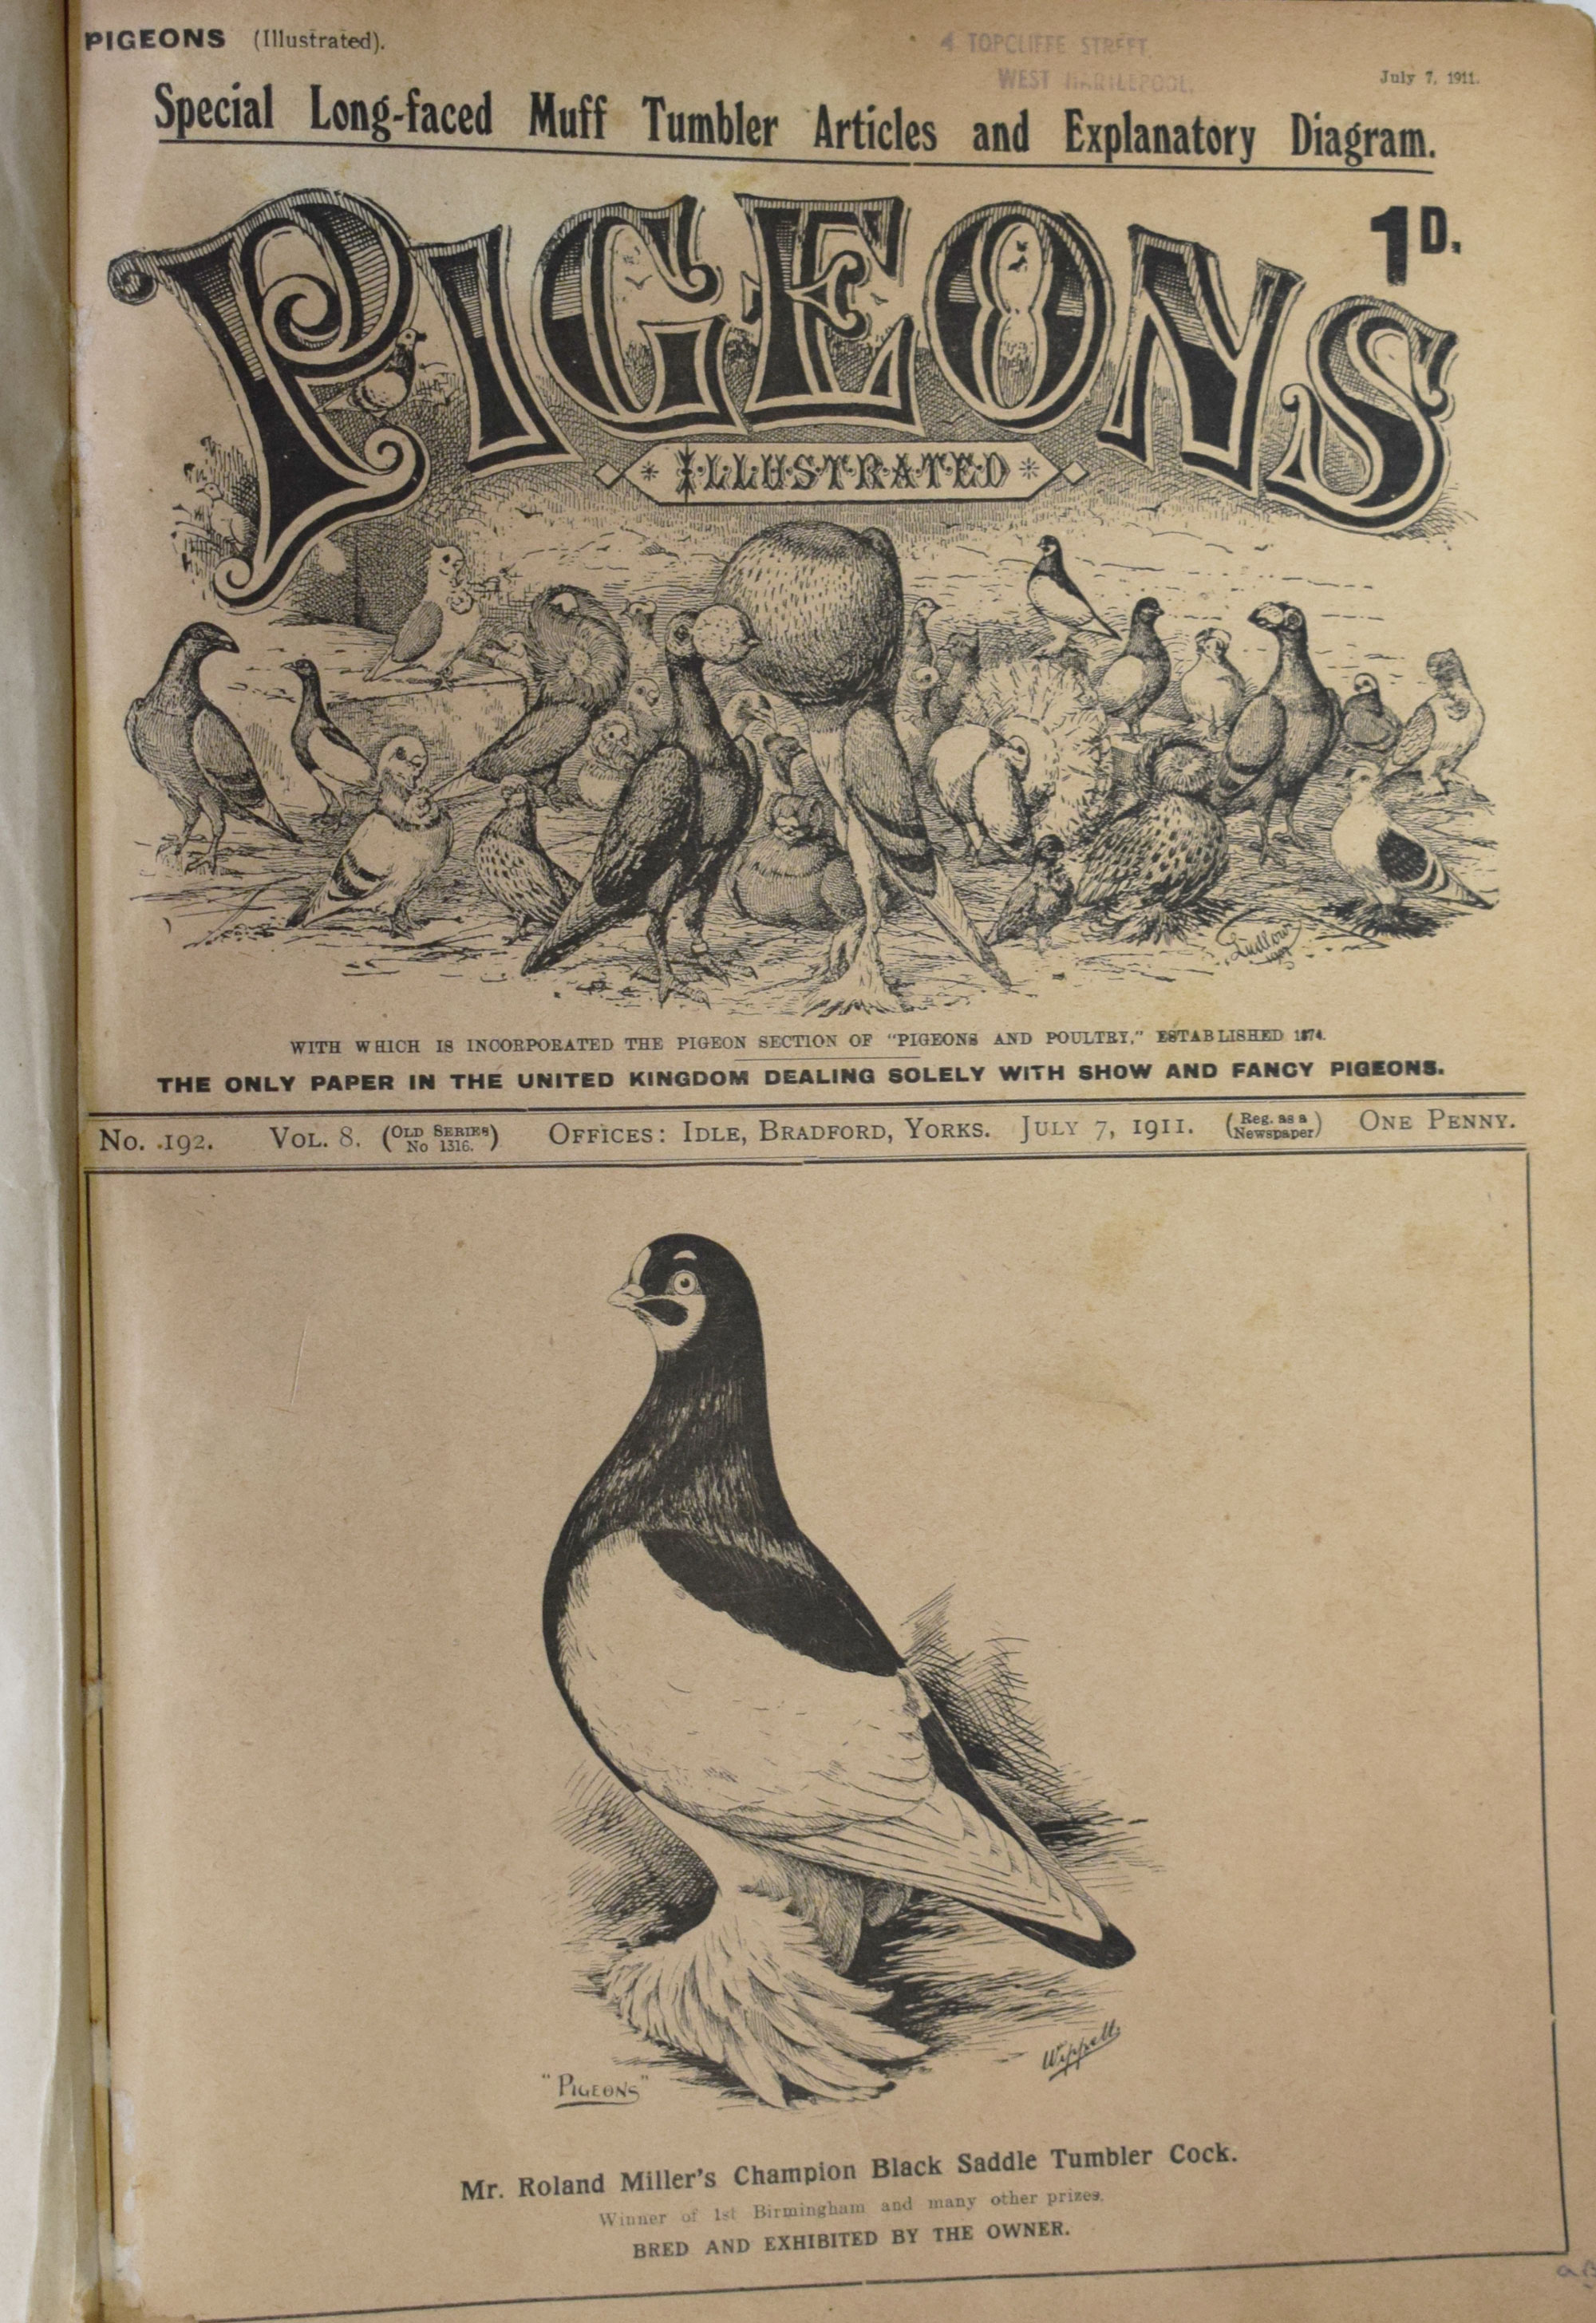 Pigeons Illustrated. Volume 8. July - December 1911.